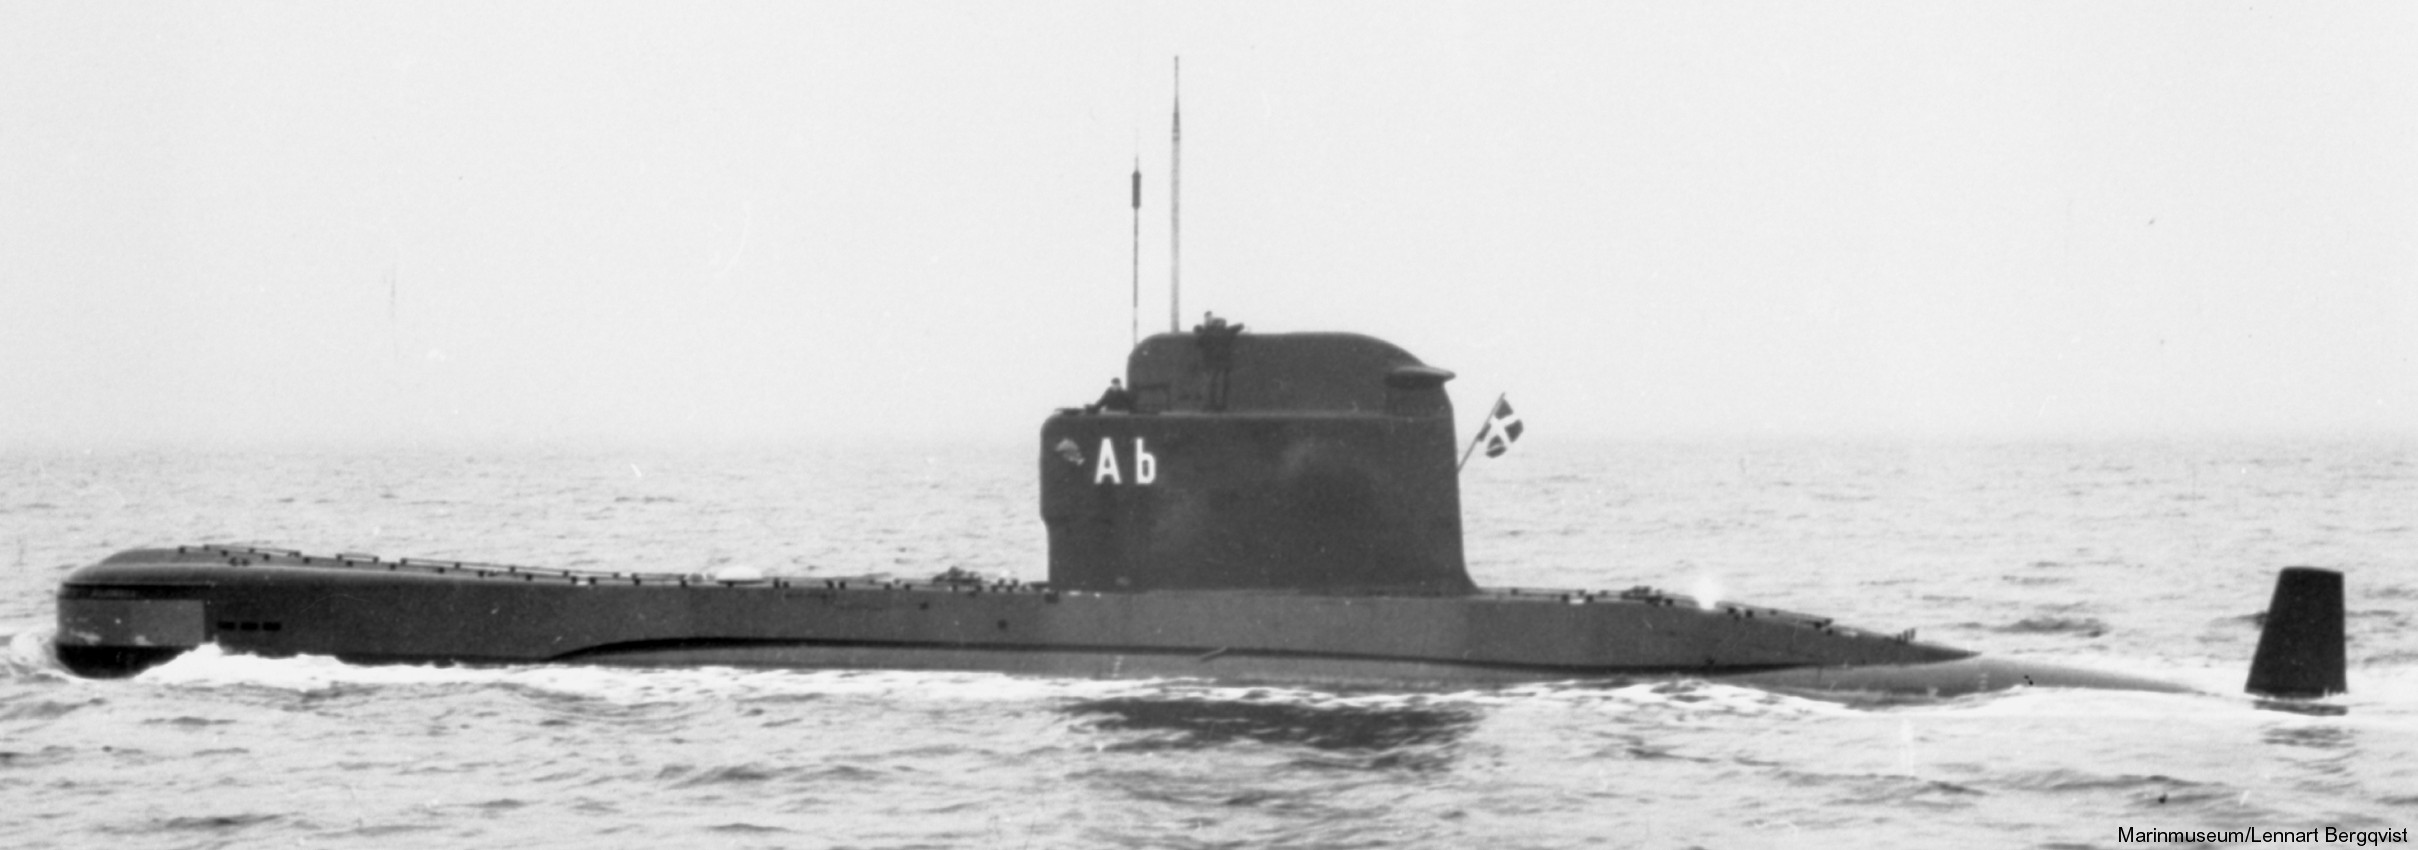 hms hswms aborren a13 class attack submarine ubåt swedish navy svenska marinen försvarsmakten 02